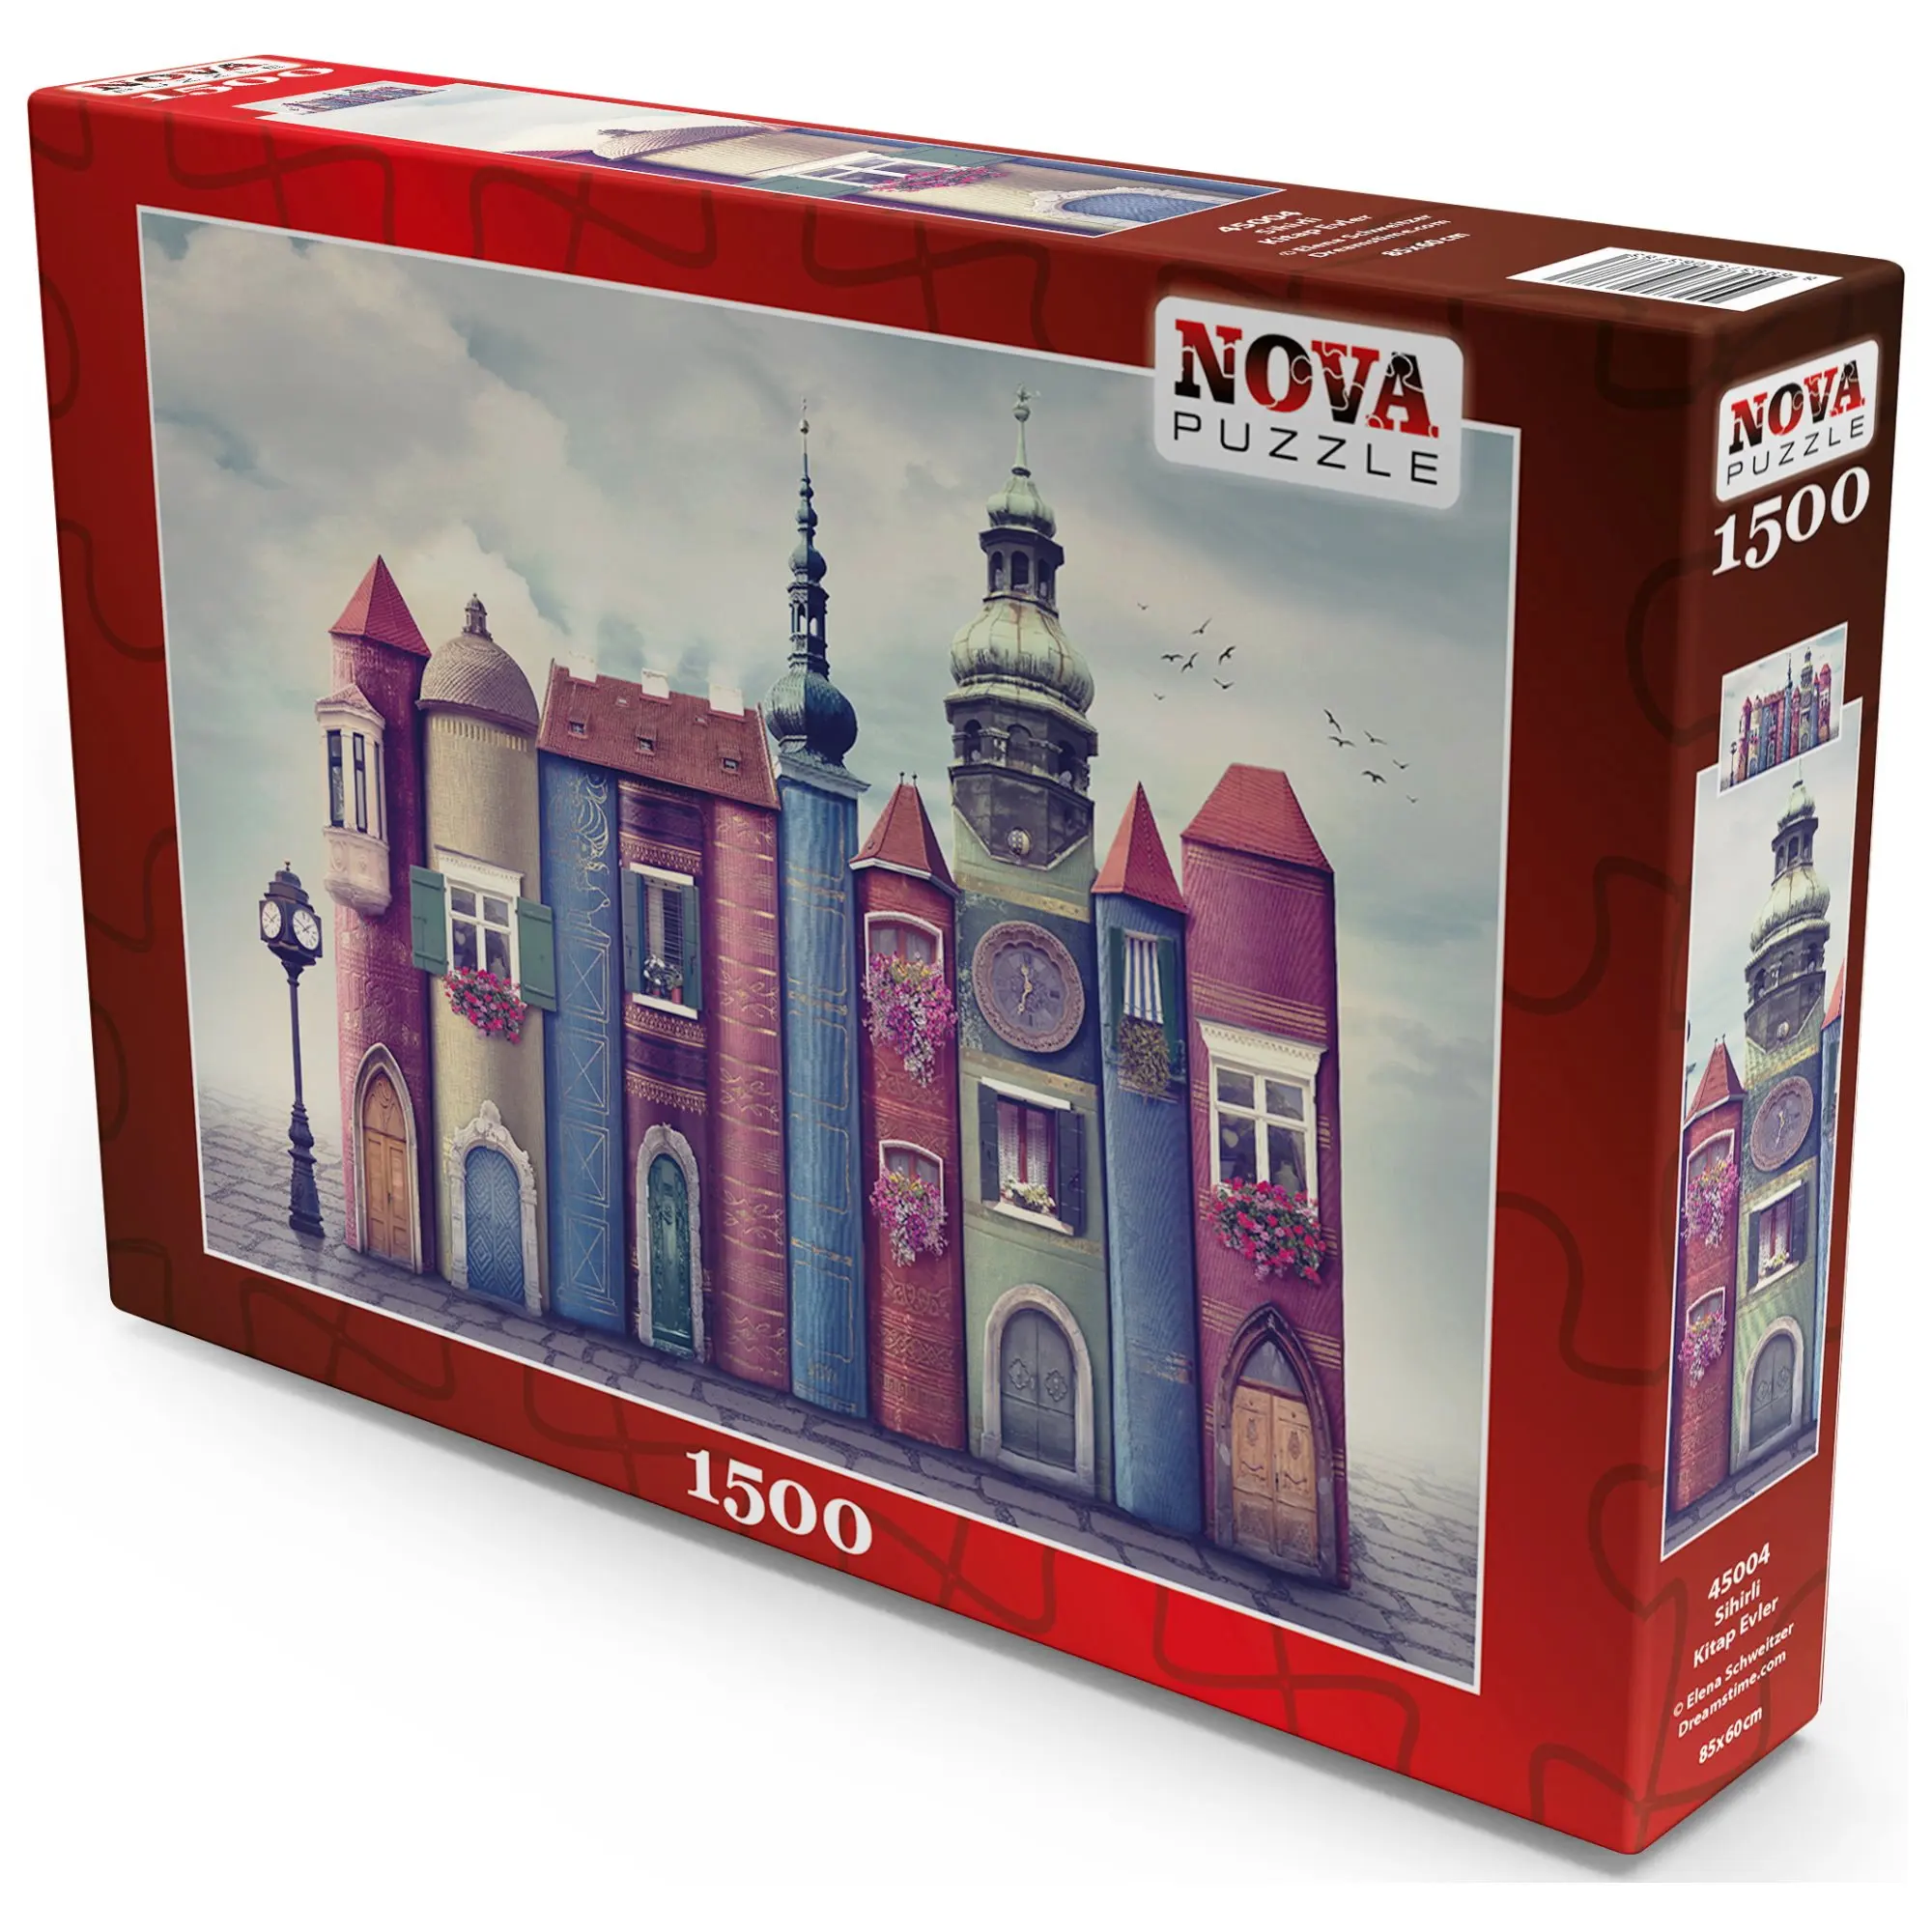 Nova пазл, волшебные книжные дома, 1500 картонных пазлов-книги, фантастическая аллея, 1500 шт., пазл для взрослых от AliExpress RU&CIS NEW